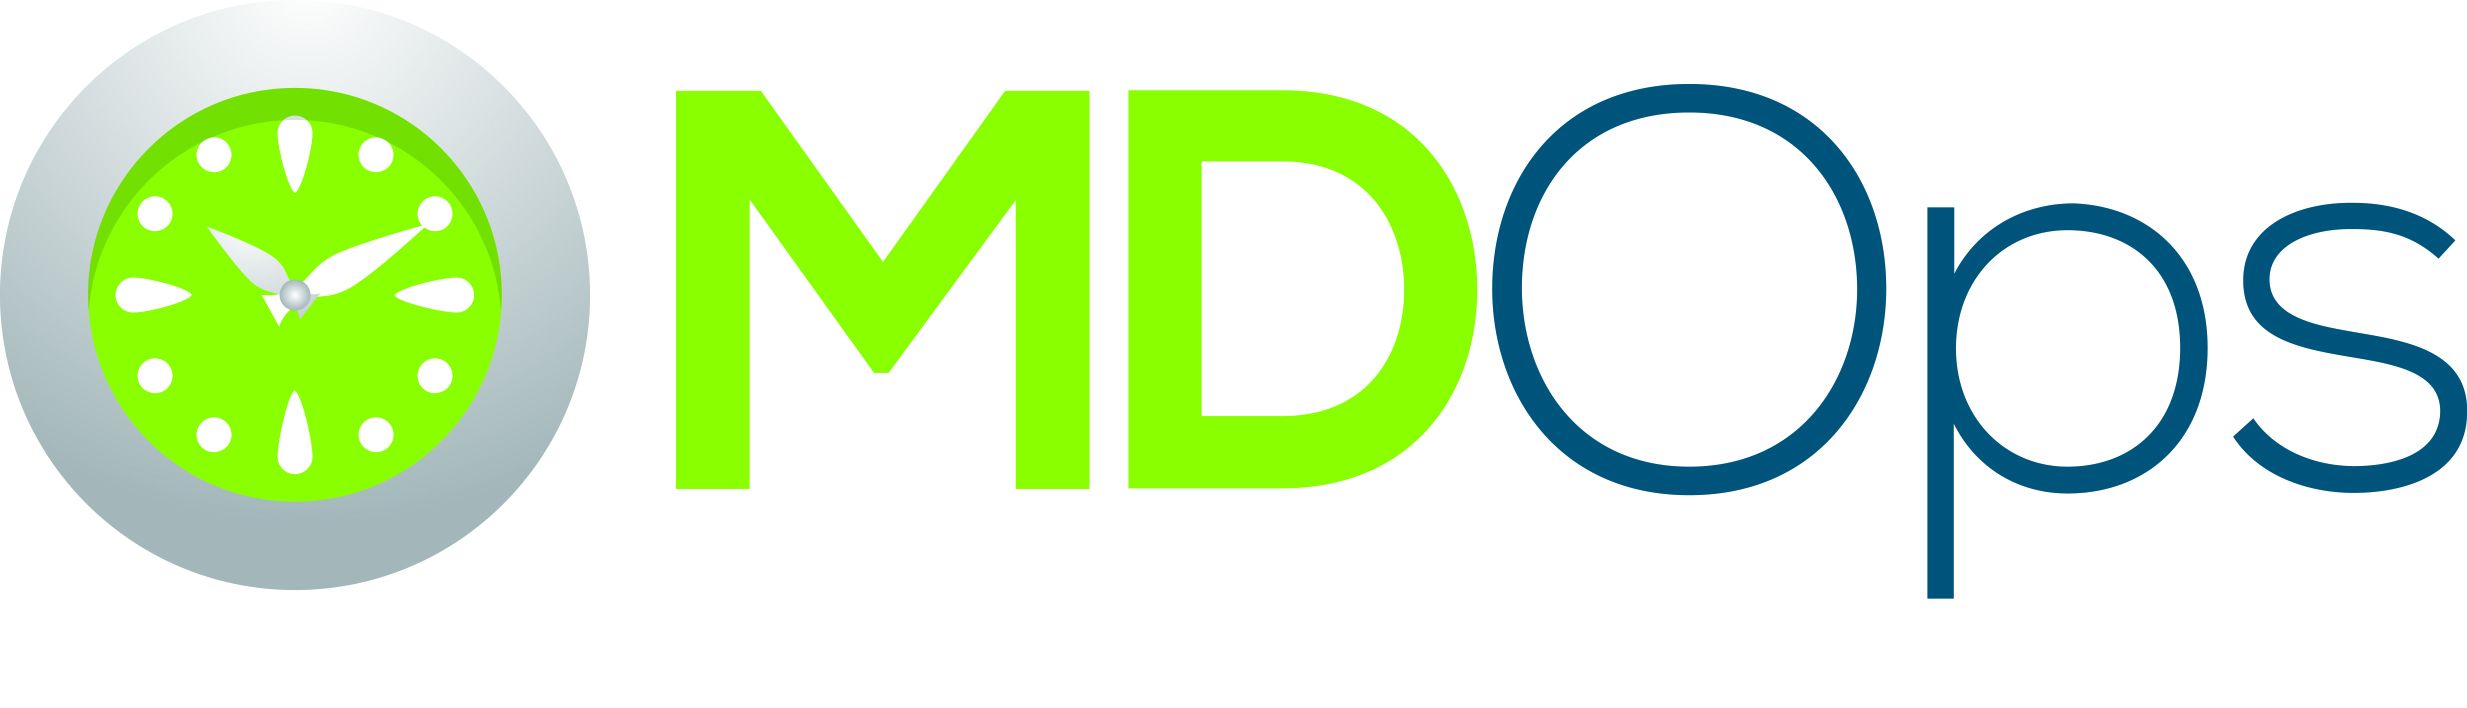 mdops2016 Logo